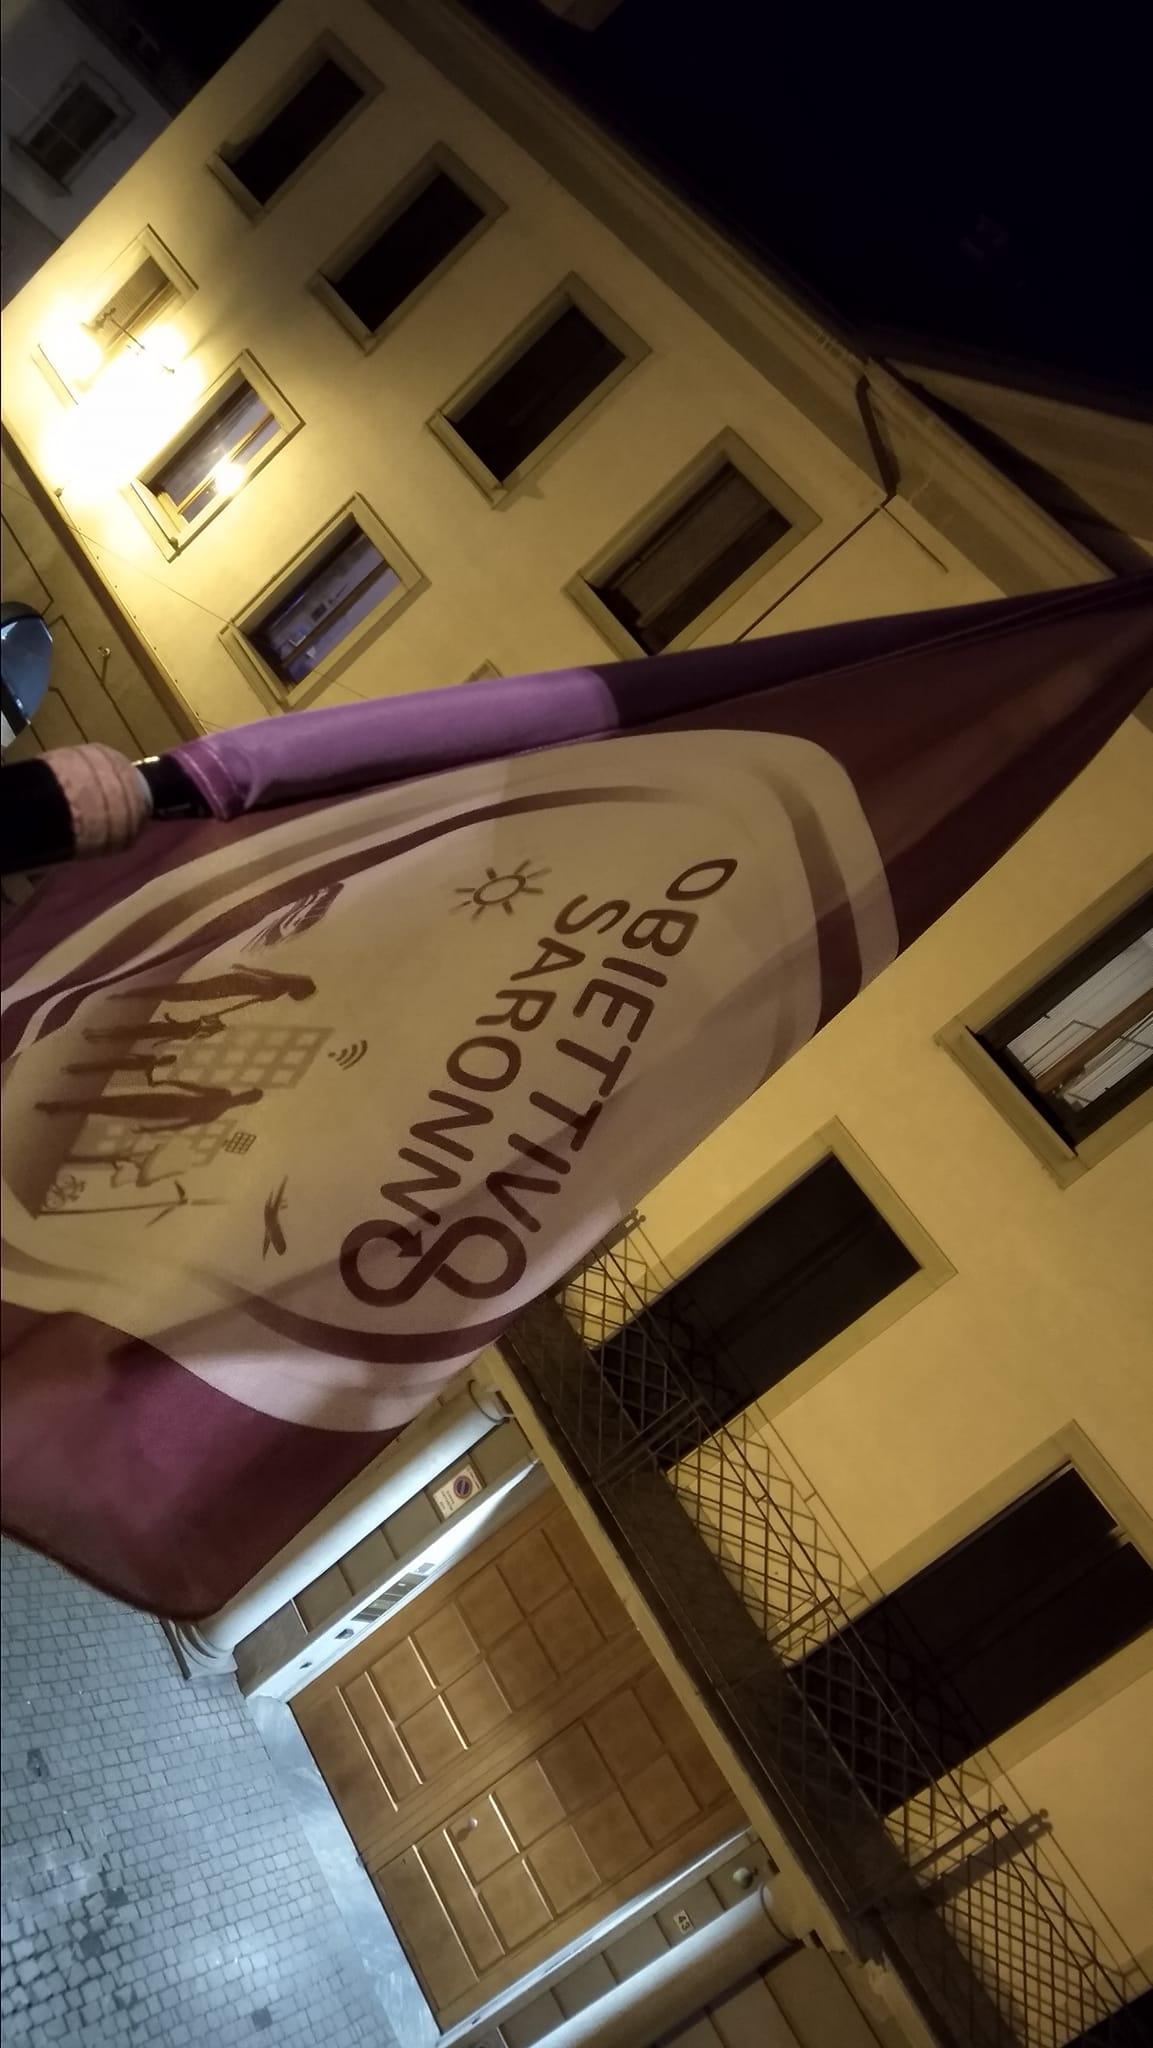 In centro sventola la bandiera di Obiettivo Saronno: presto svelato l’indirizzo della nuova sede